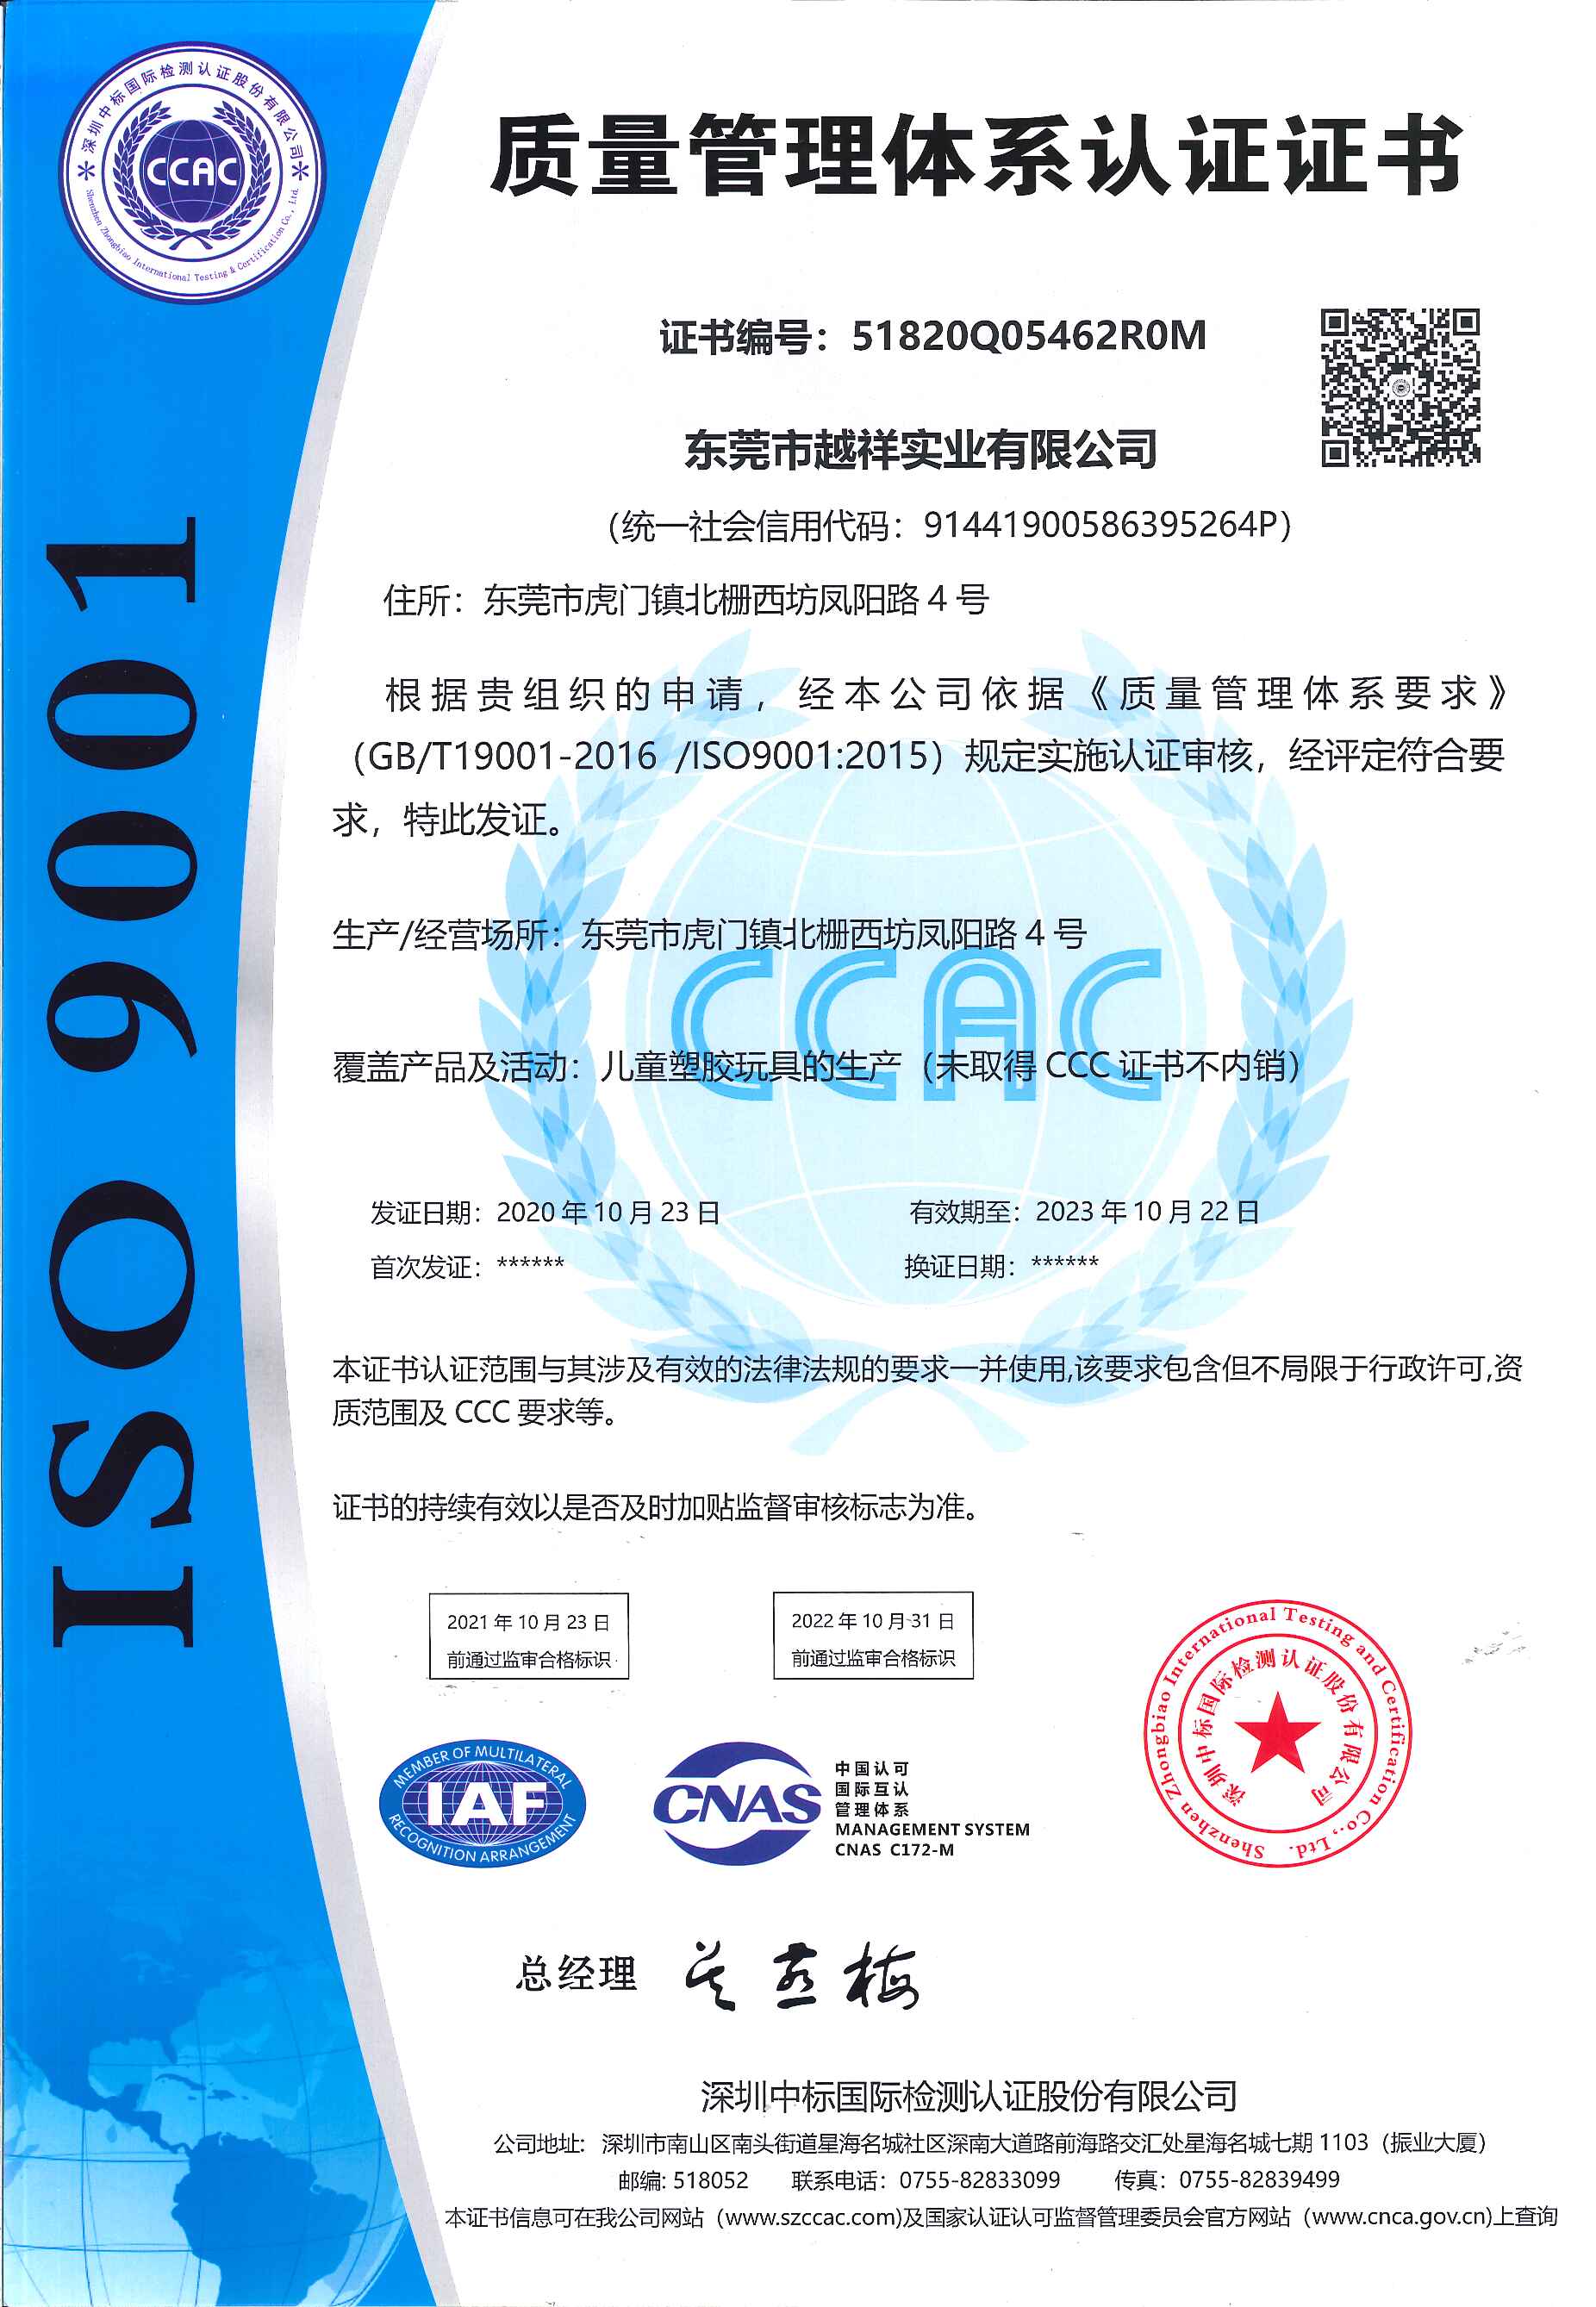 祝贺东莞市越祥实业有限公司通过ISO9001认证审核